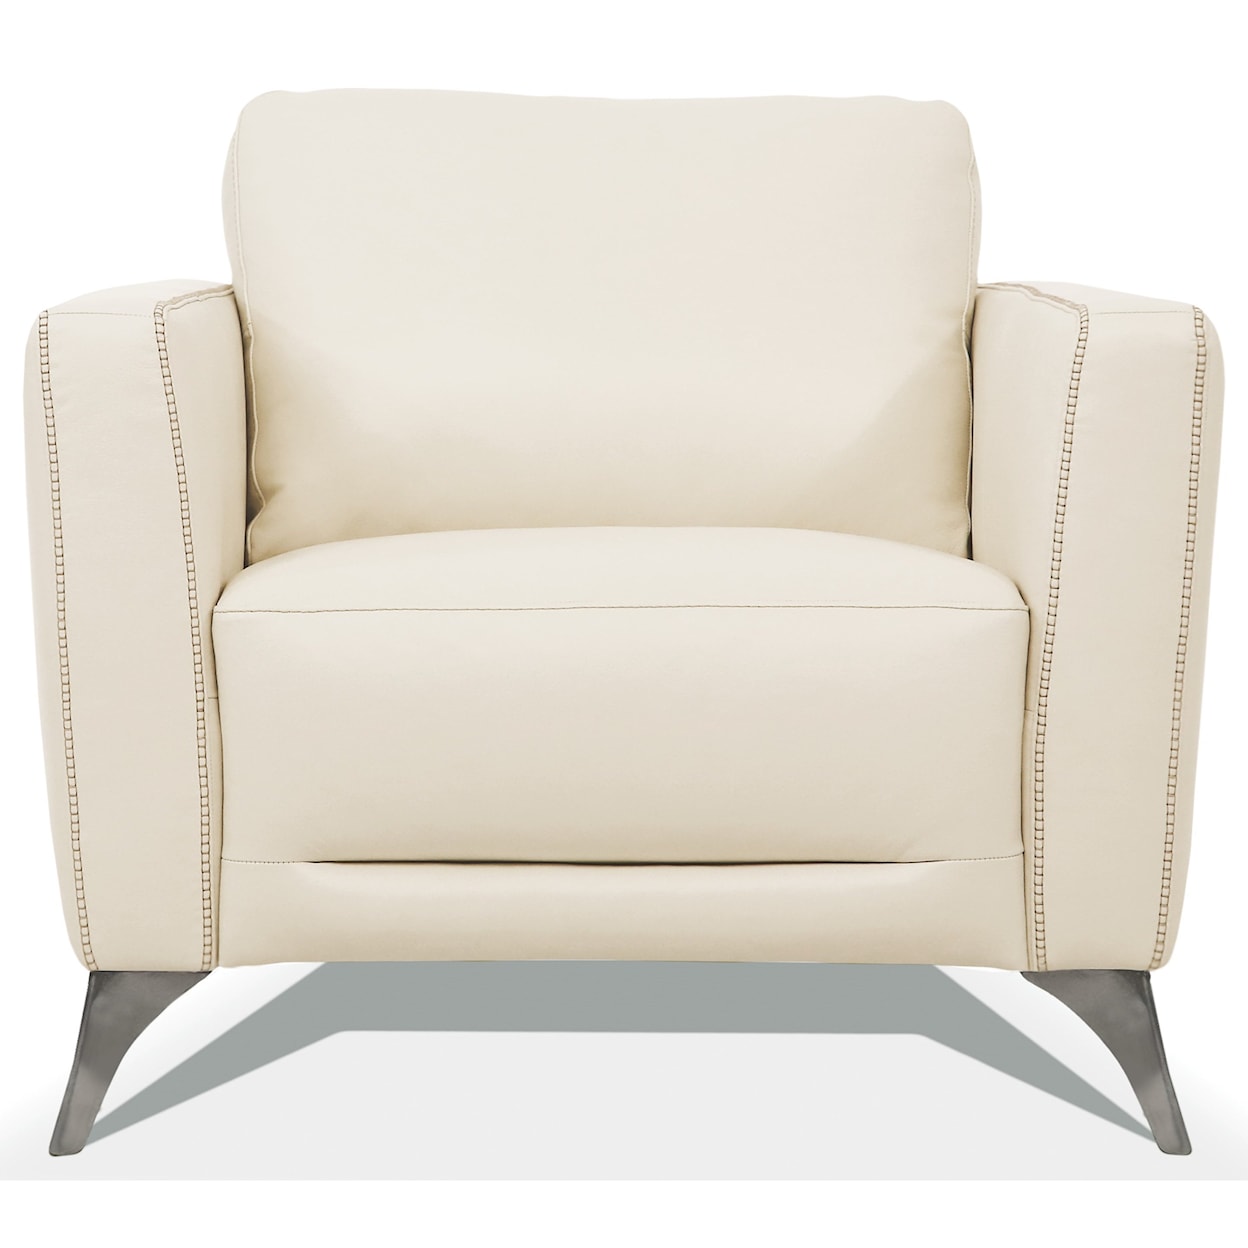 Acme Furniture Malaga Chair